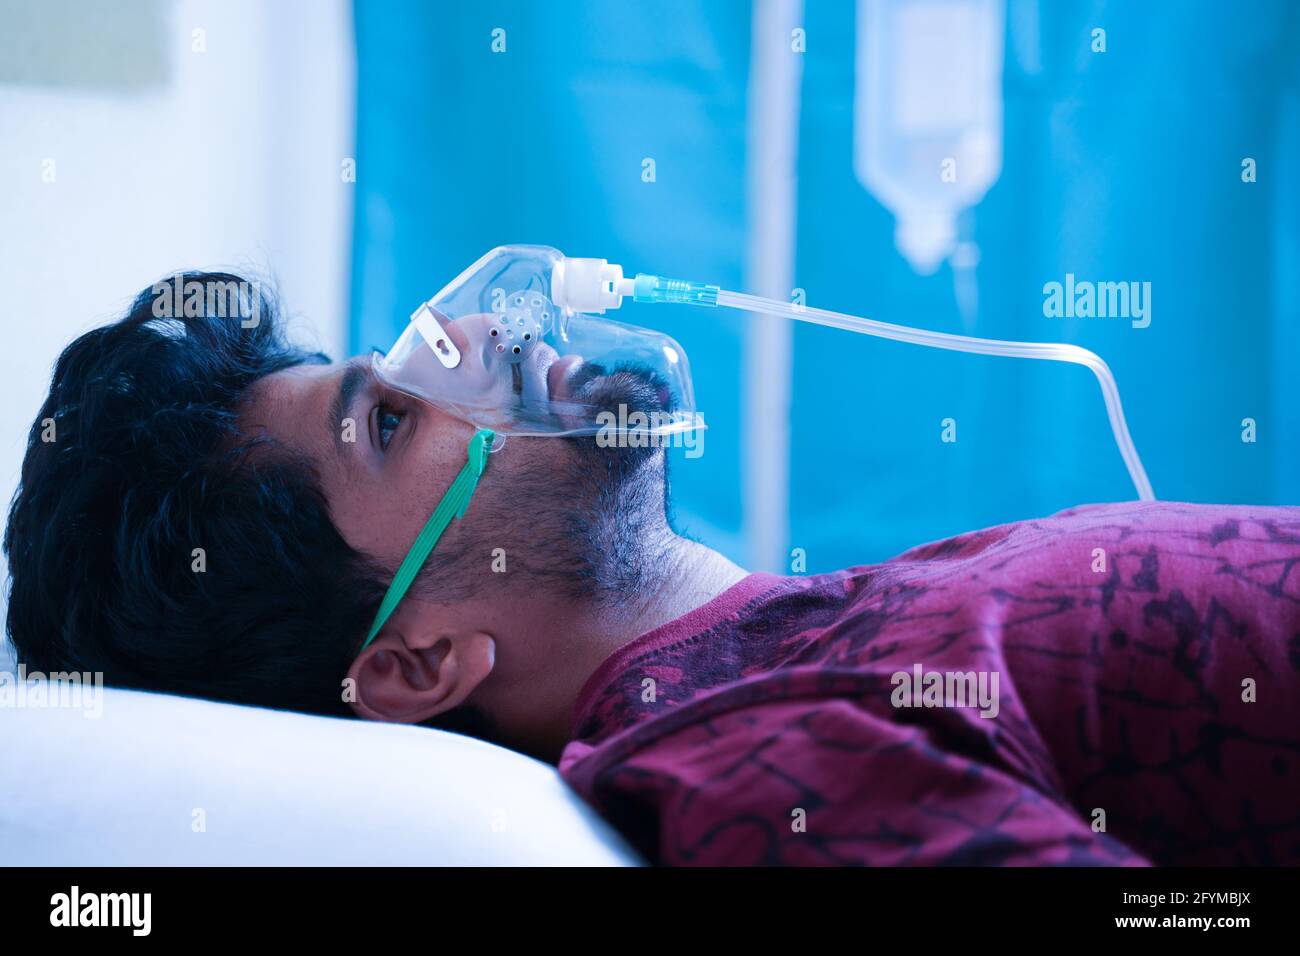 Vue latérale du jeune homme qui respire sur le masque à oxygène du ventilateur À l'hôpital en raison du coronavirus Covid-19 dyspnée ou essoufflement - concept de covid infectant Banque D'Images